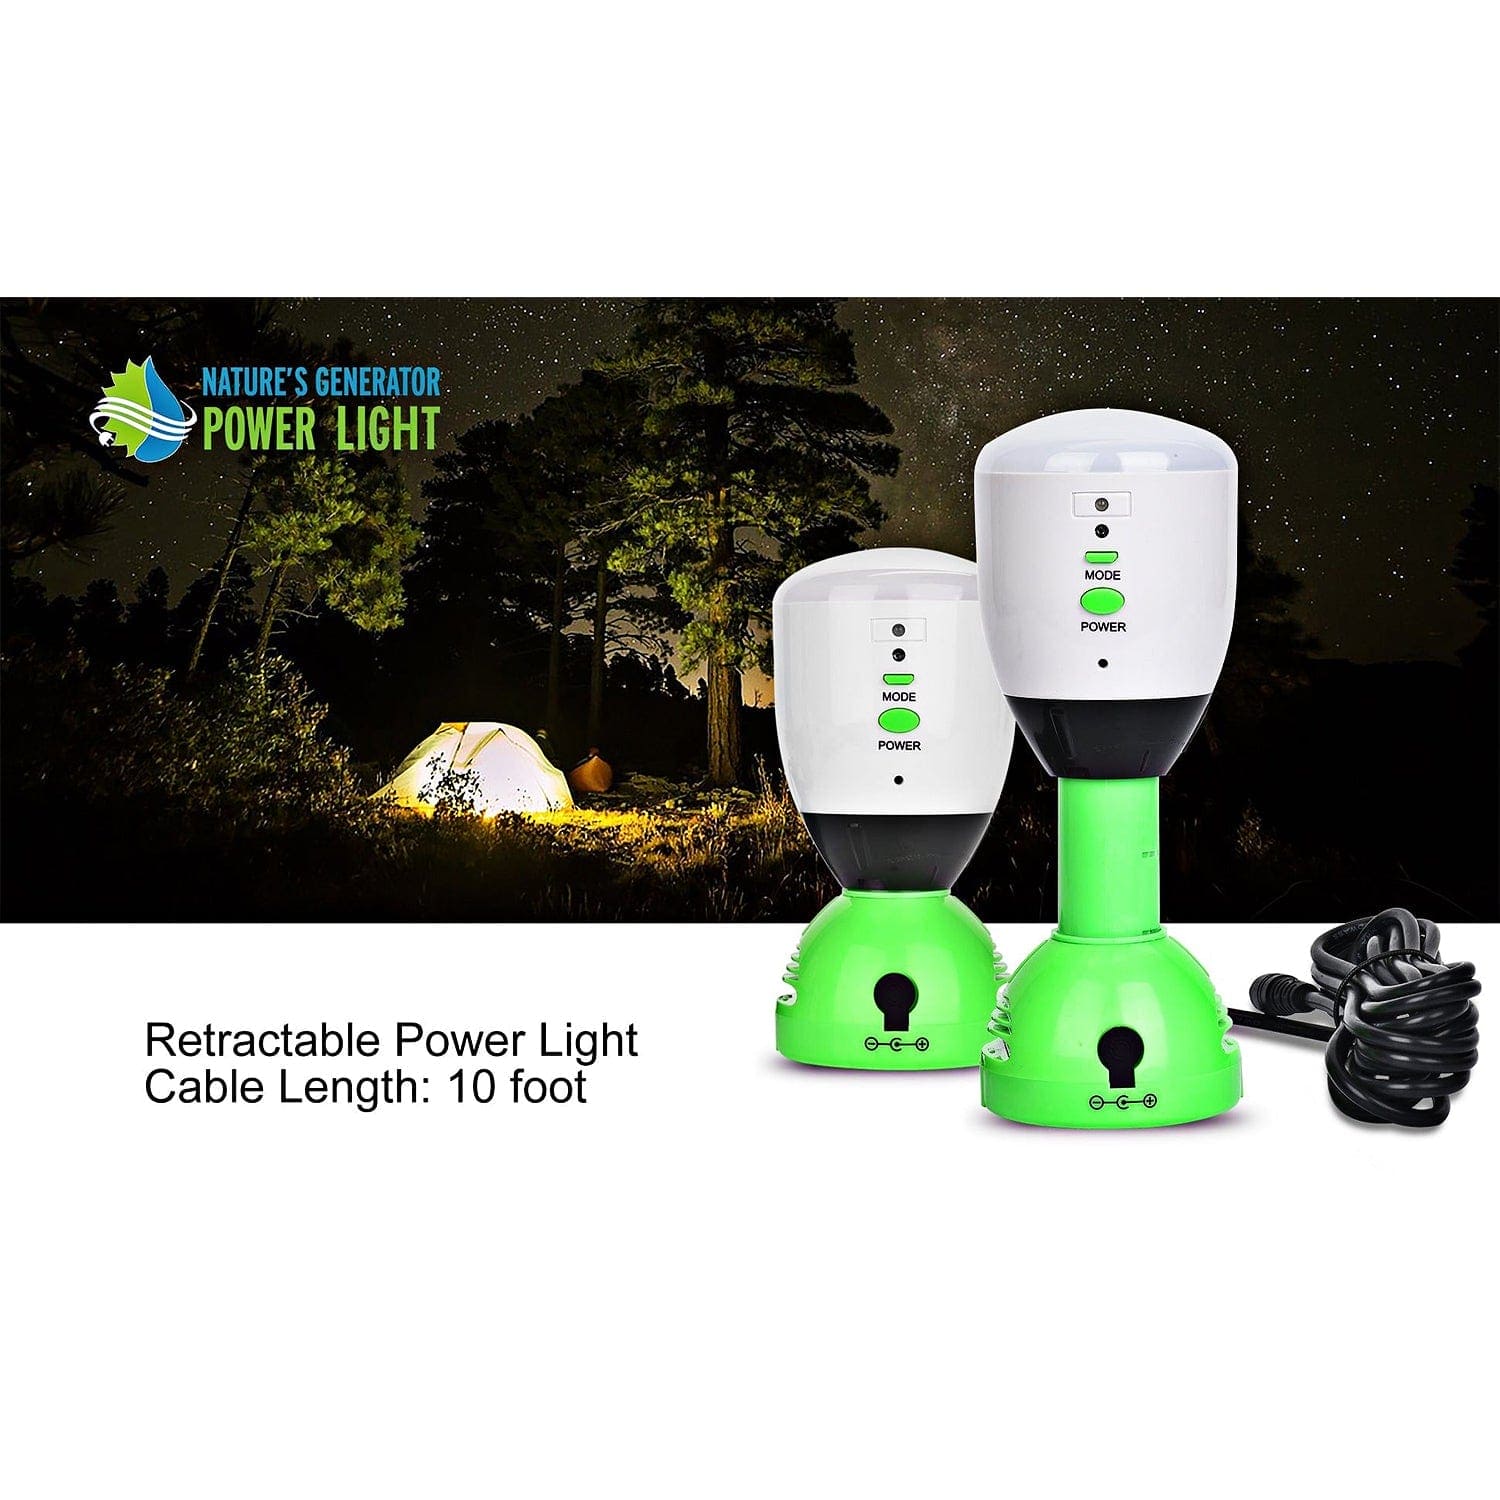 Nature's Generator Power Light - Nature's Generator